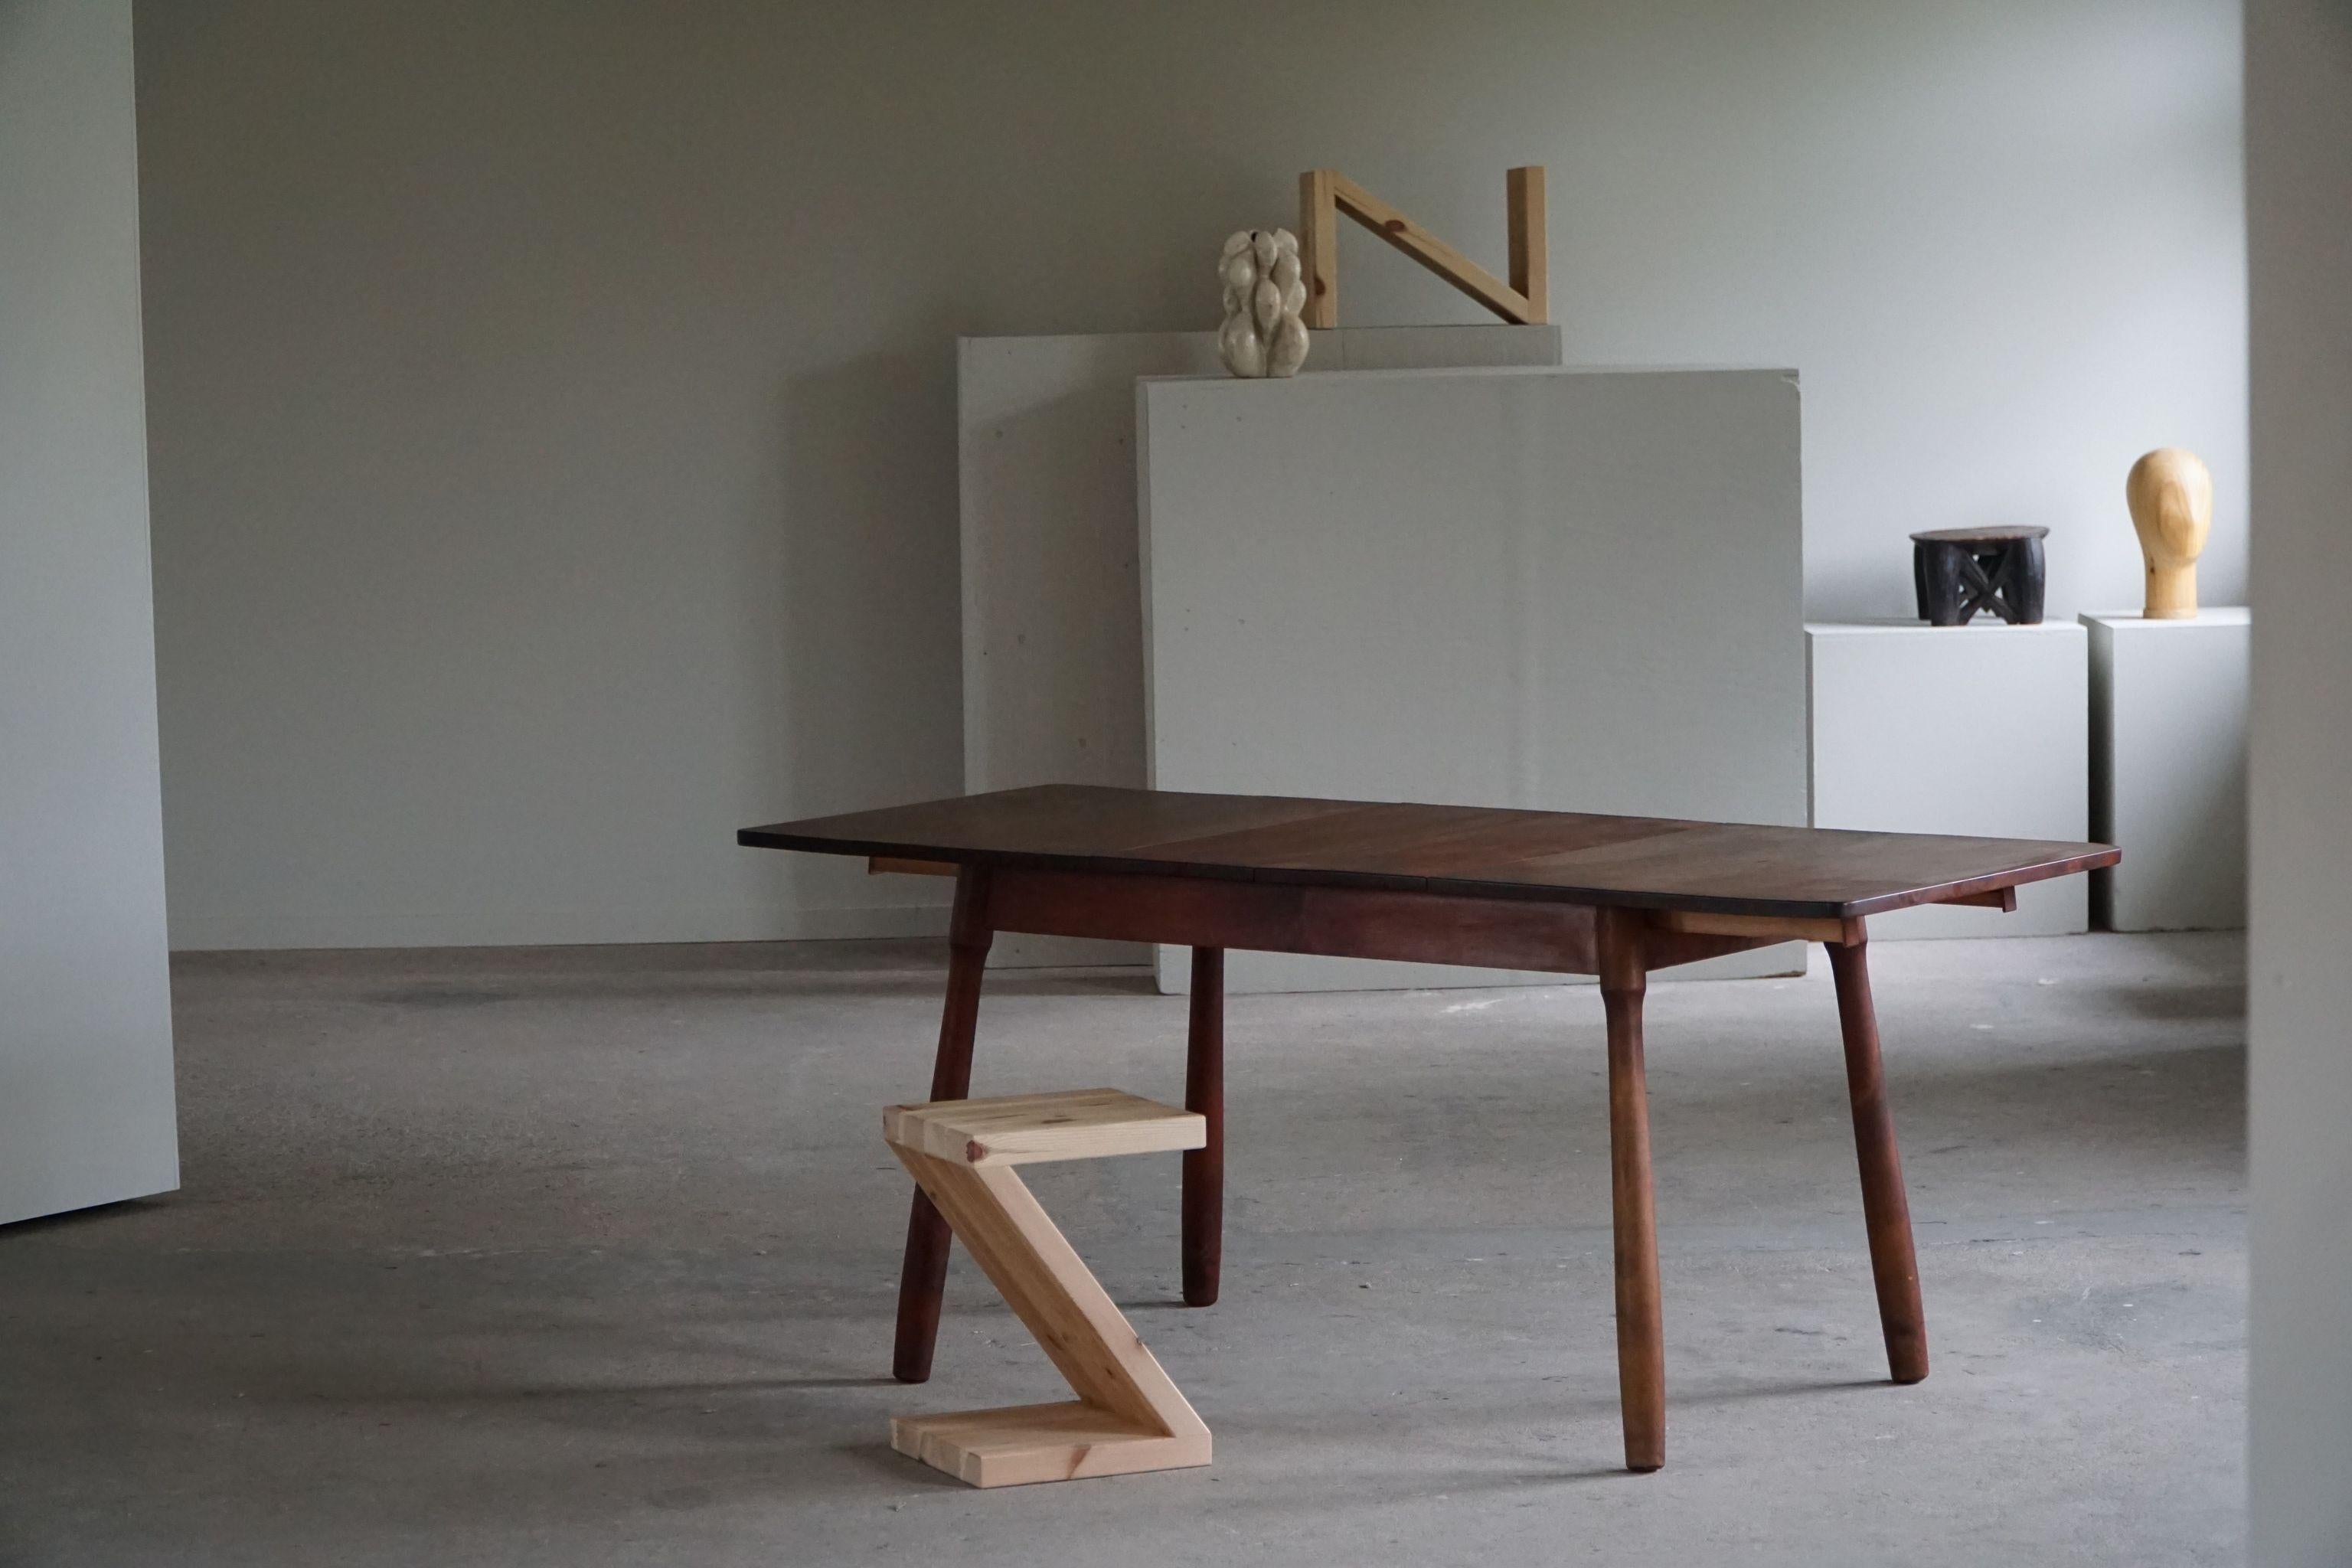 Ein exklusiver moderner Esstisch / Schreibtisch aus massiver Buche mit feinen, keulenförmigen Beinen. 
Er wird dem dänischen Designer Arnold Madsen zugeschrieben und verweist auf seinen ikonischen 